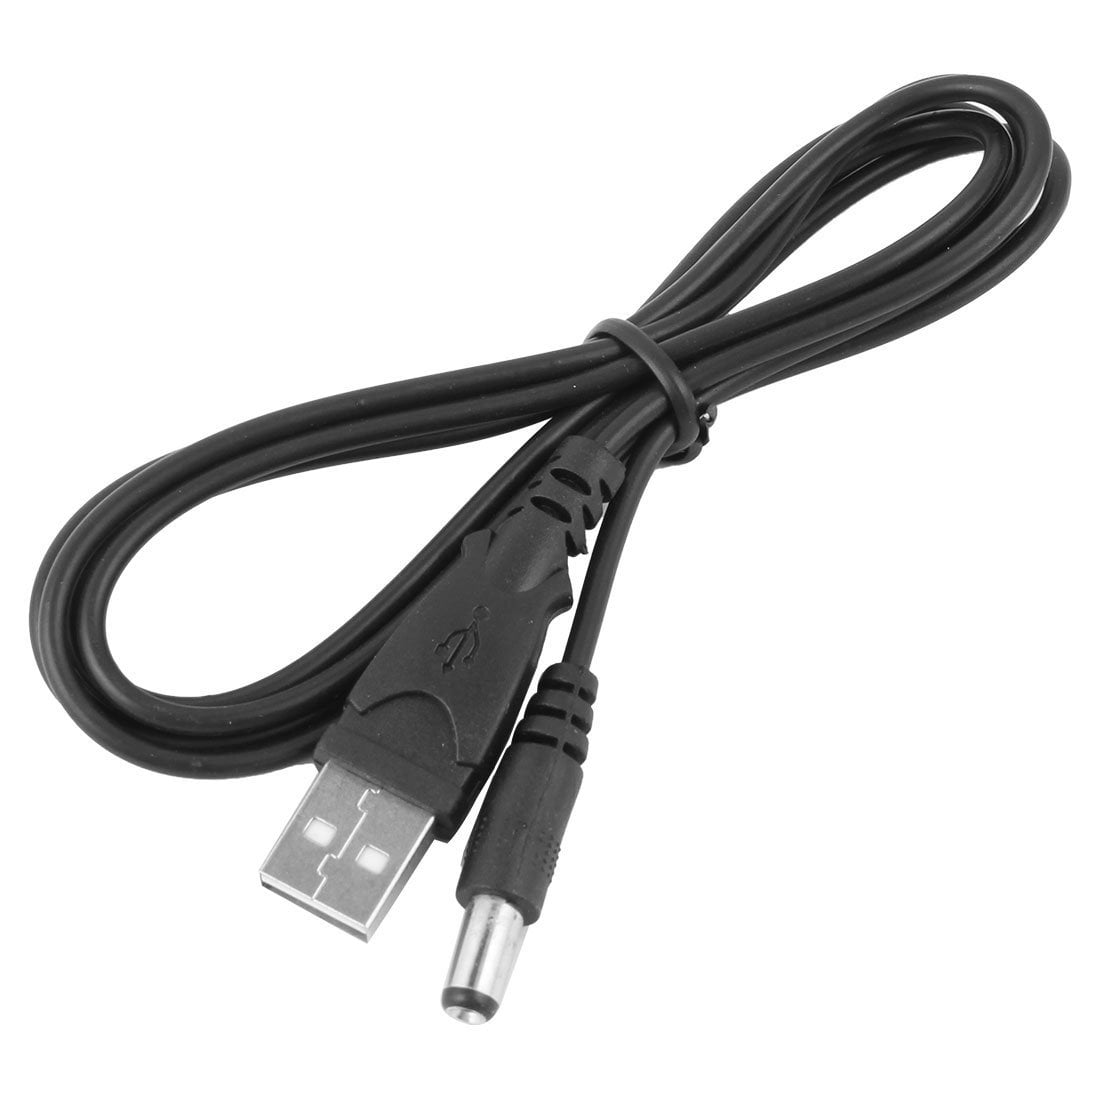 Cable Adaptador USB Tipo C a Jack Barrel 5.5x2.1mm hembra - ELECTROART